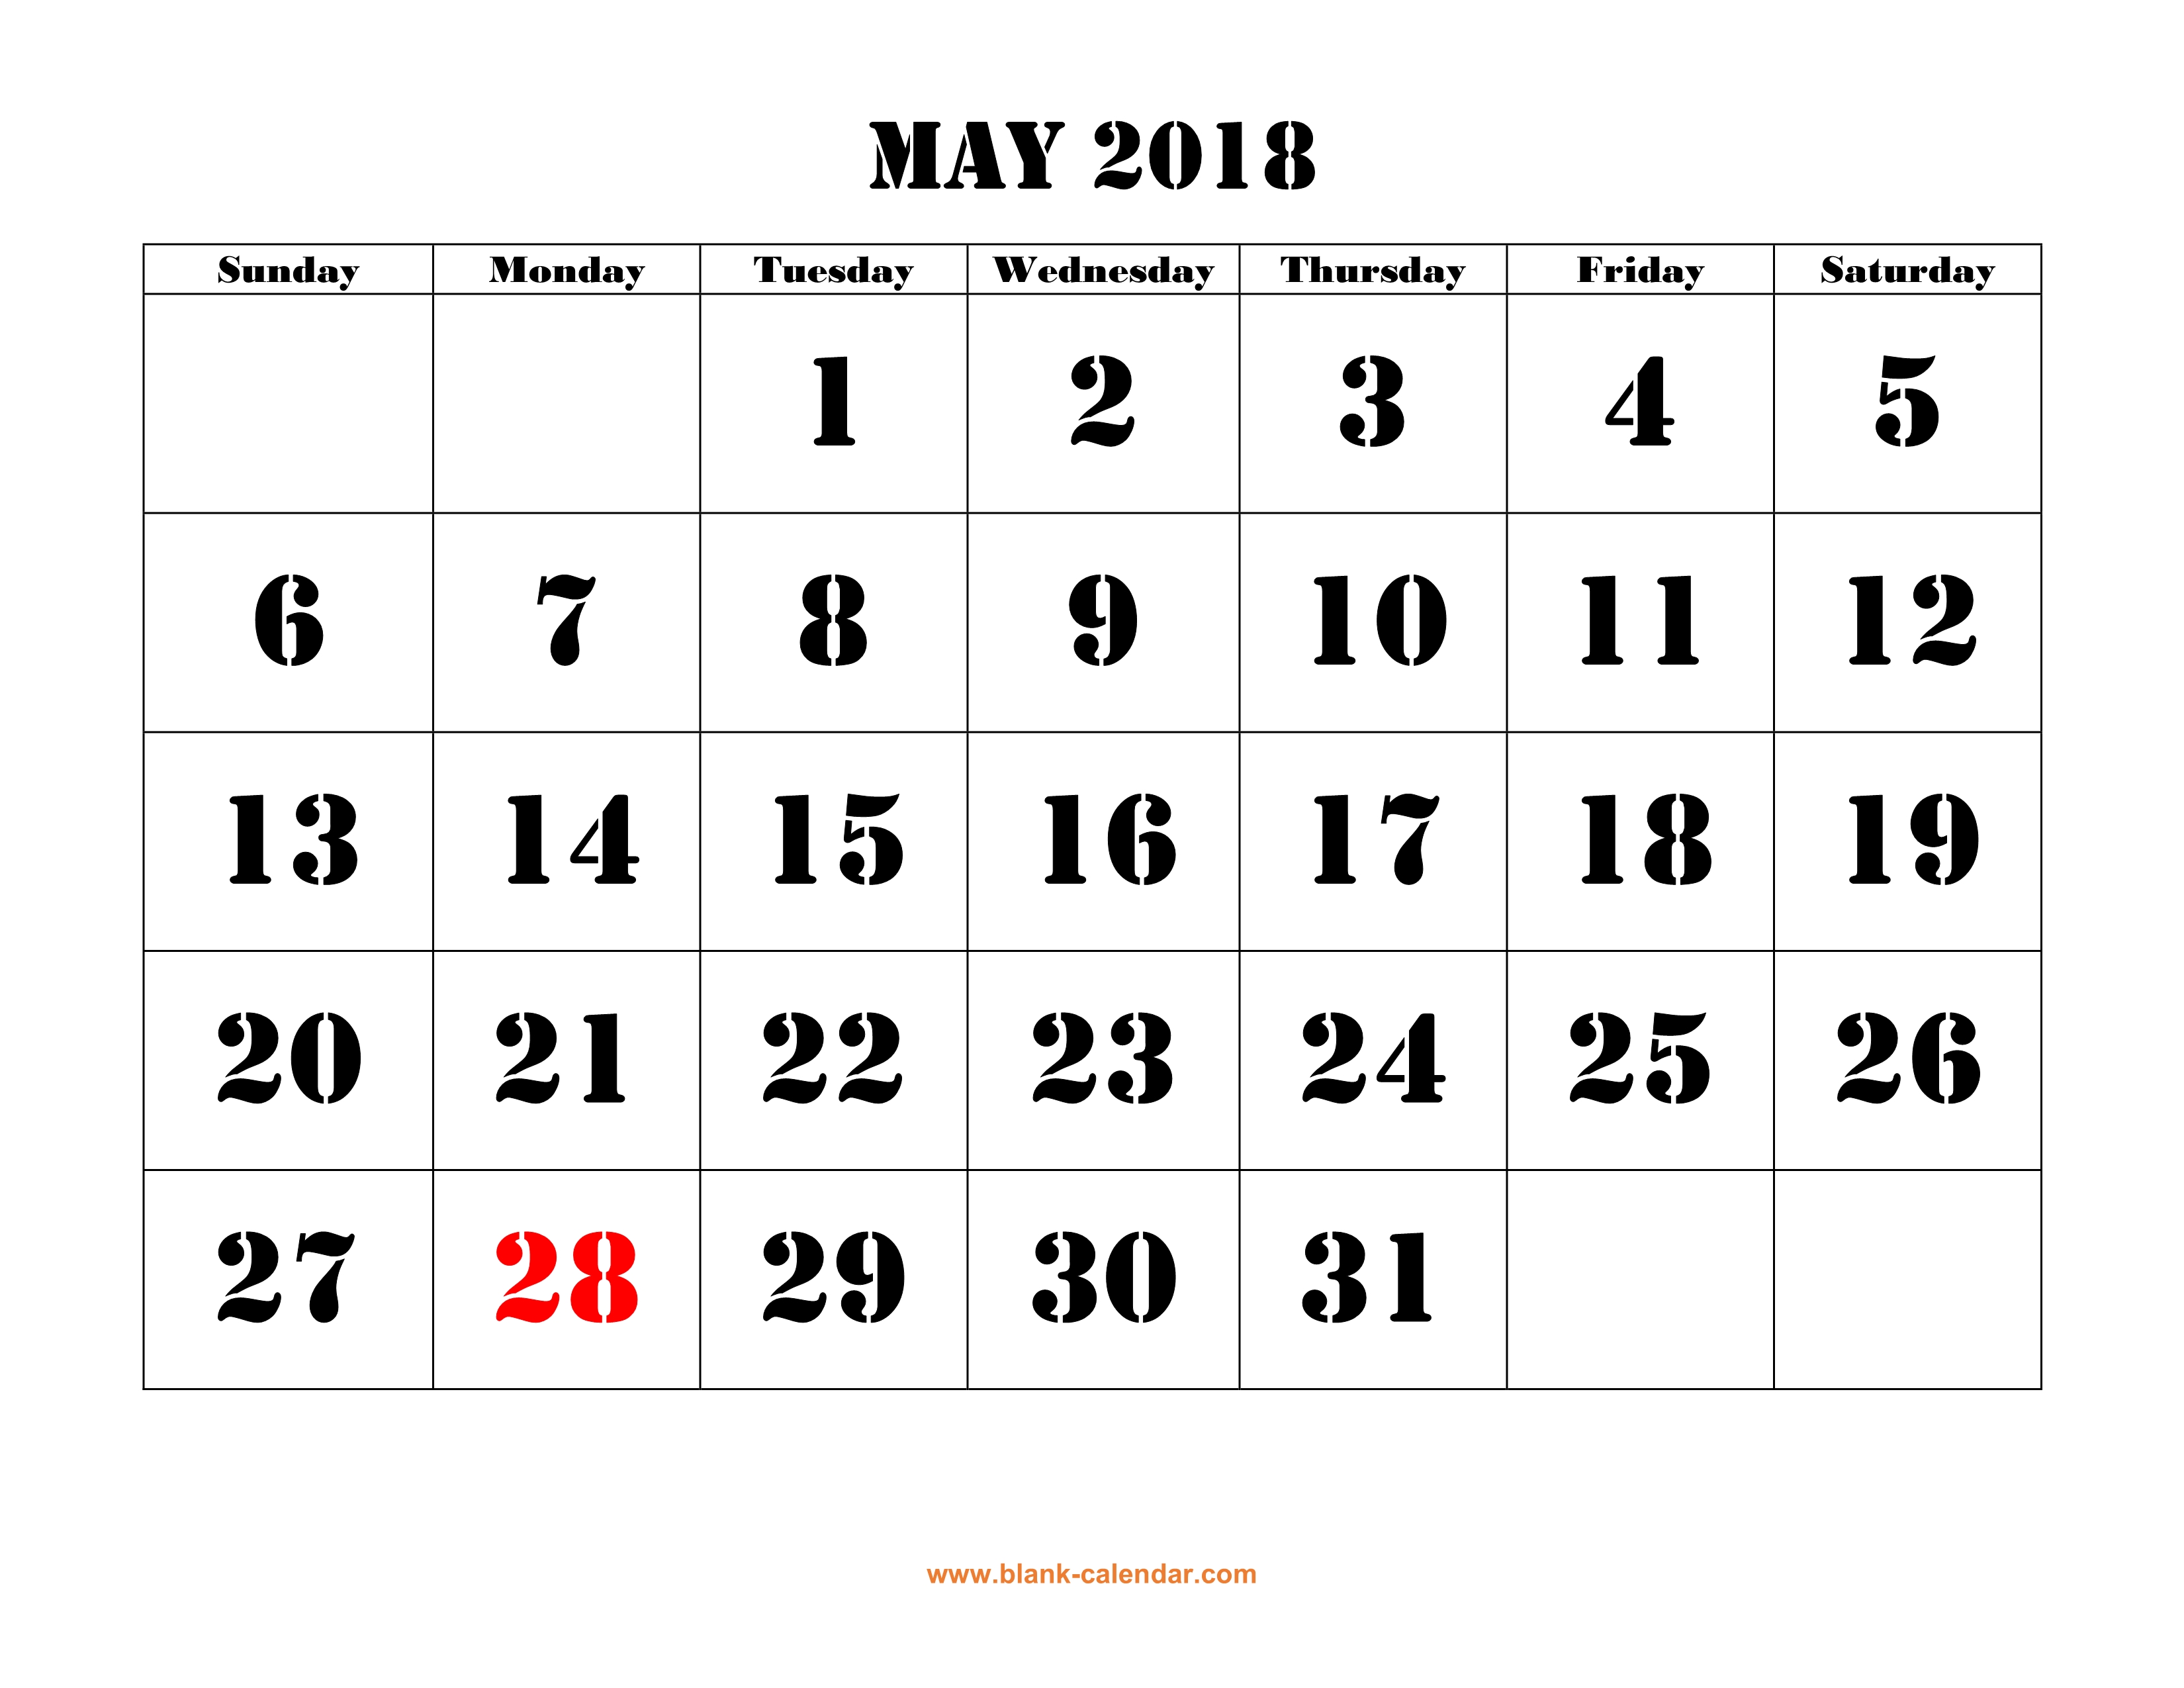 free-2018-calendar-with-holidays-uk-2-qualads